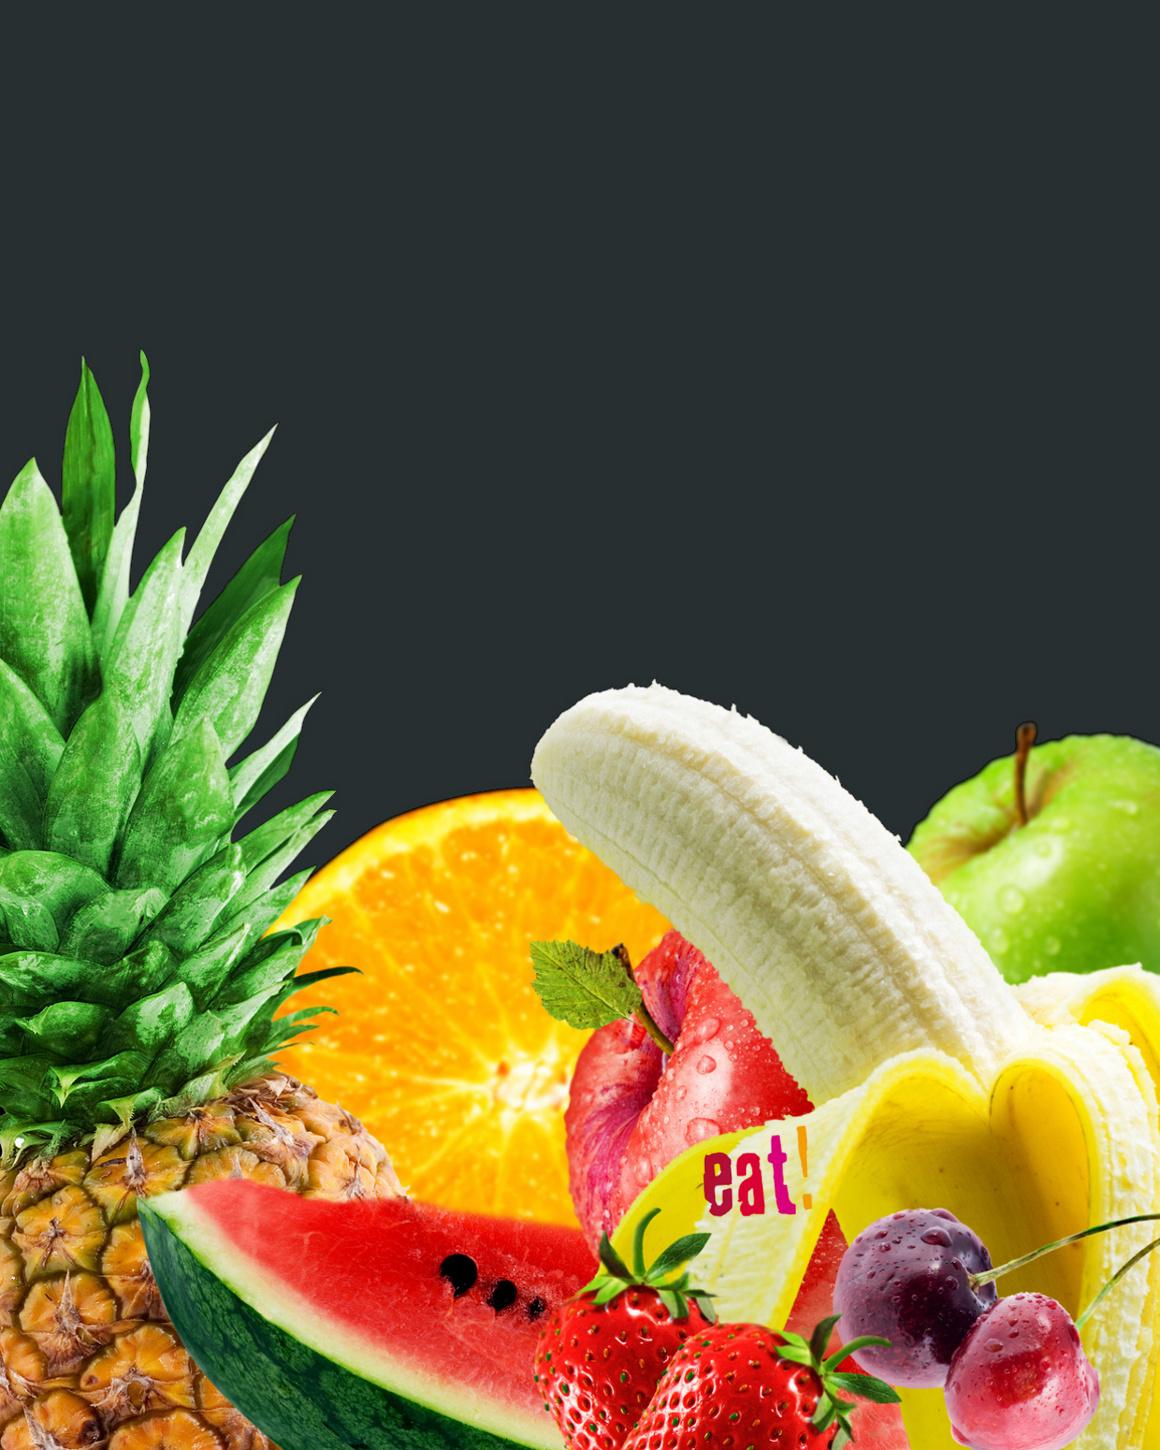 eat_c_Mixed_Fruit_eat_300dpi_1160x1450_120227